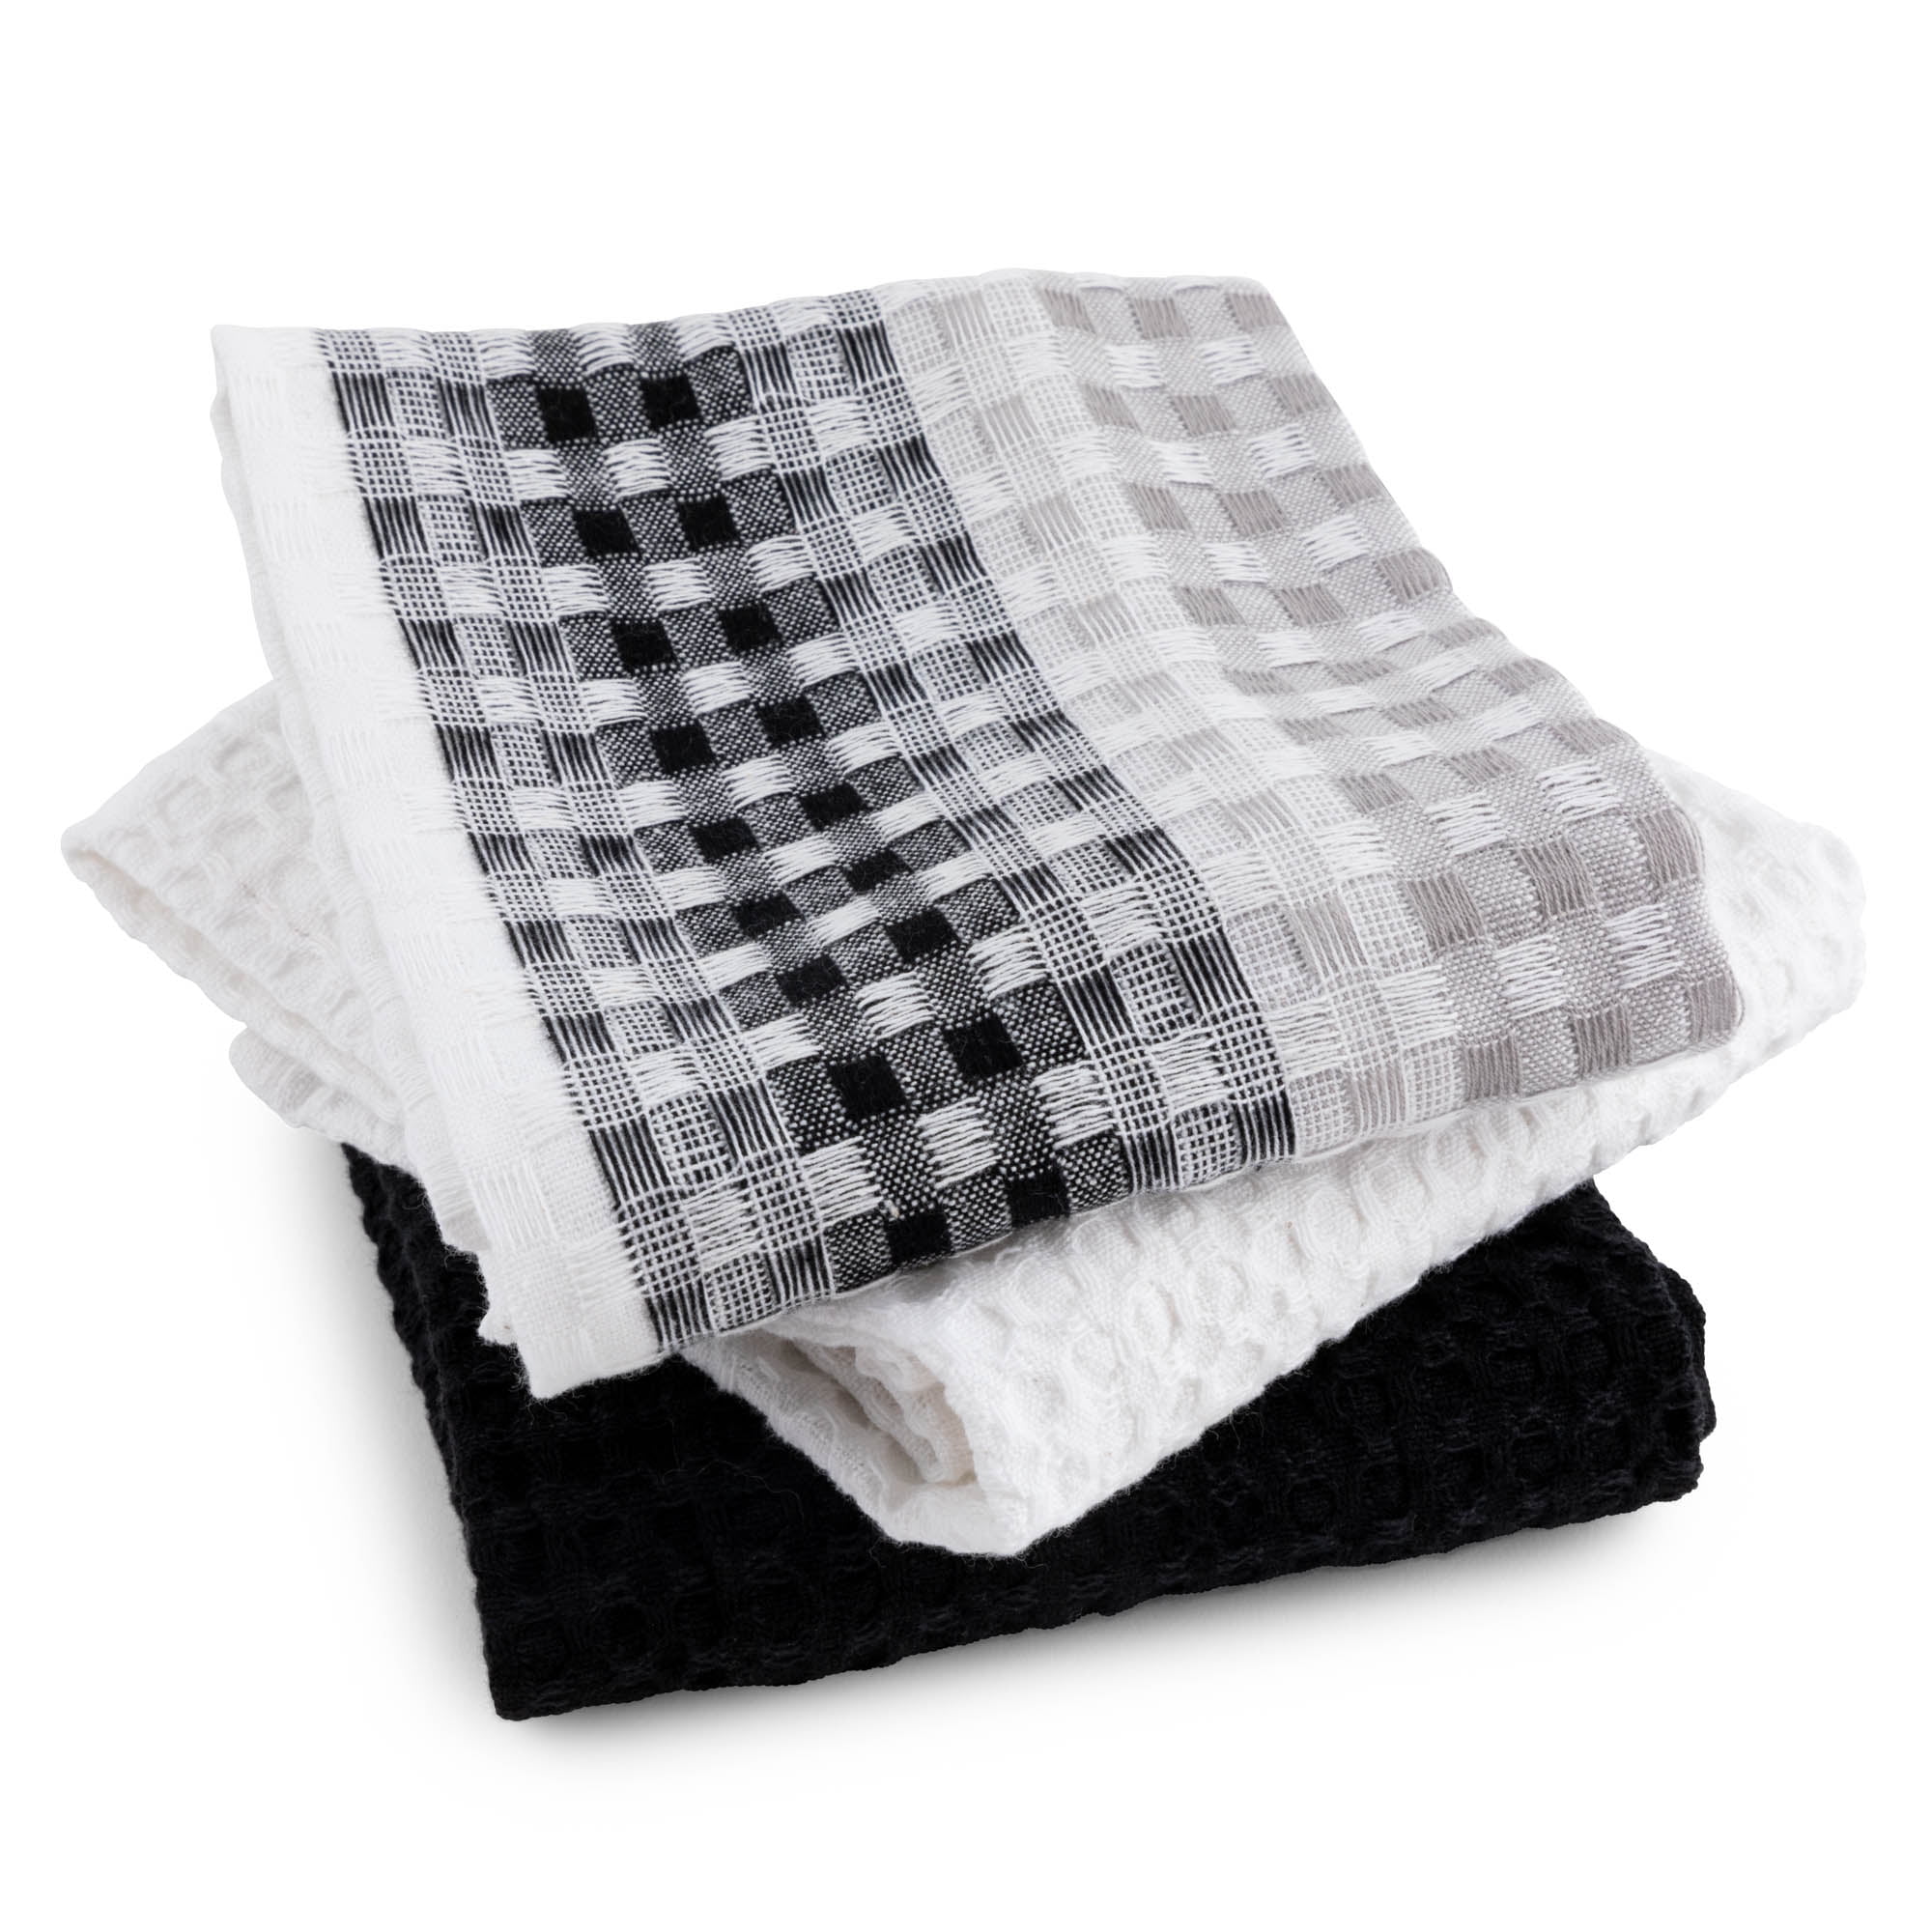 Atelier Saucier Noche Dish Towels Set of 4 Black Waffle Cotton